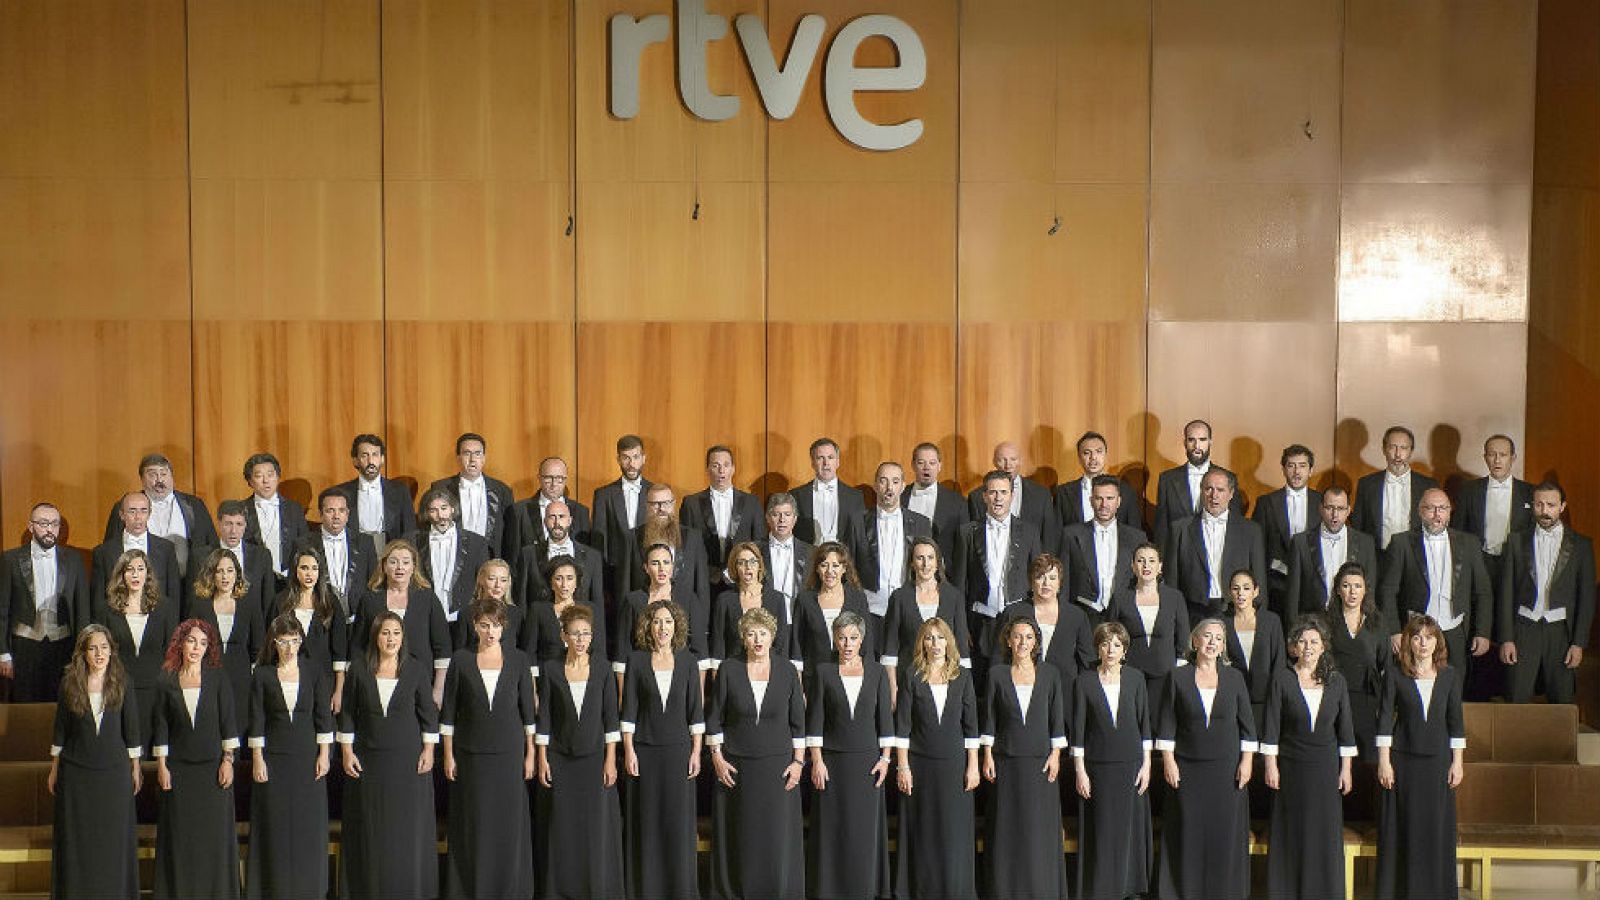 Fue informe - El Coro de RTVE cumple 50 años (2000)